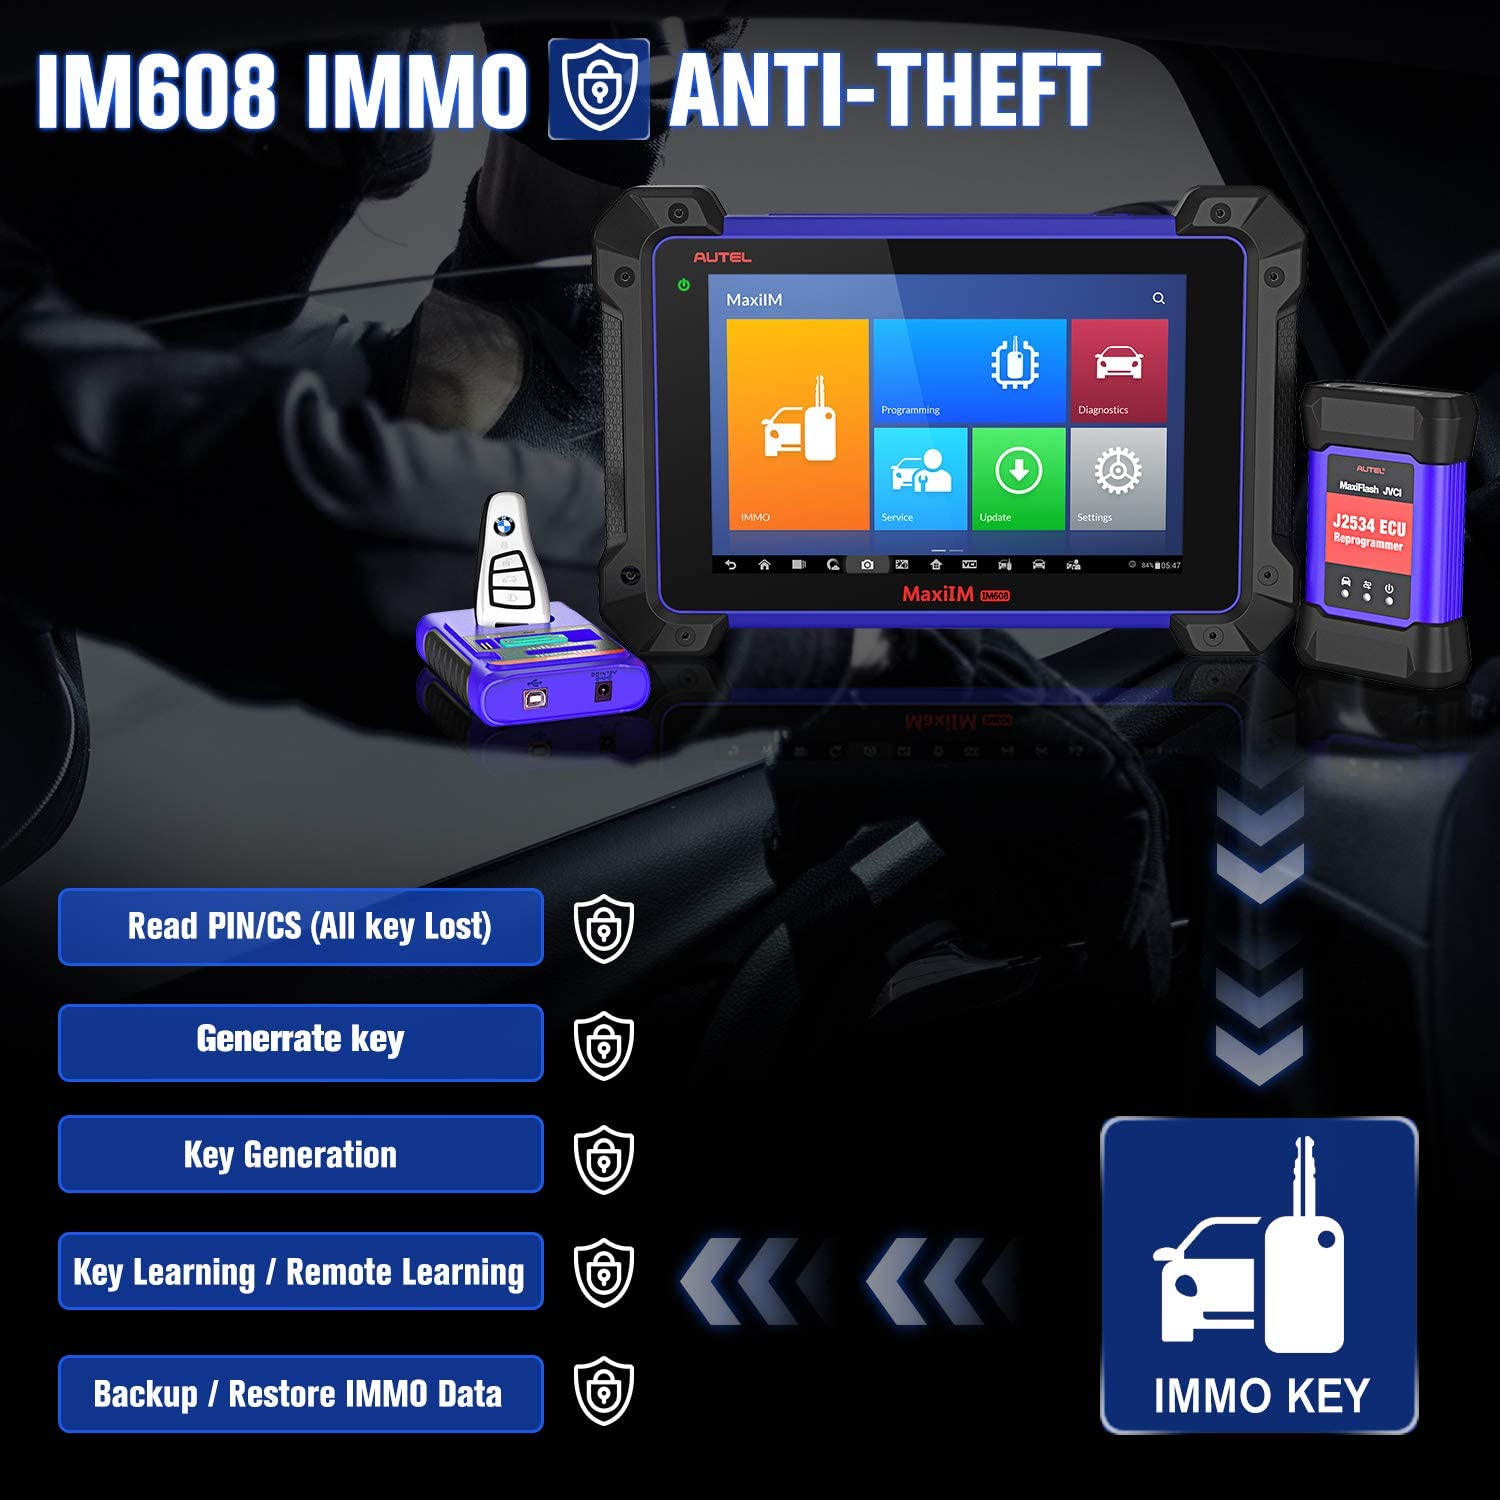 Autel MaxiIM IM608 has IMMO and Anti-Theft